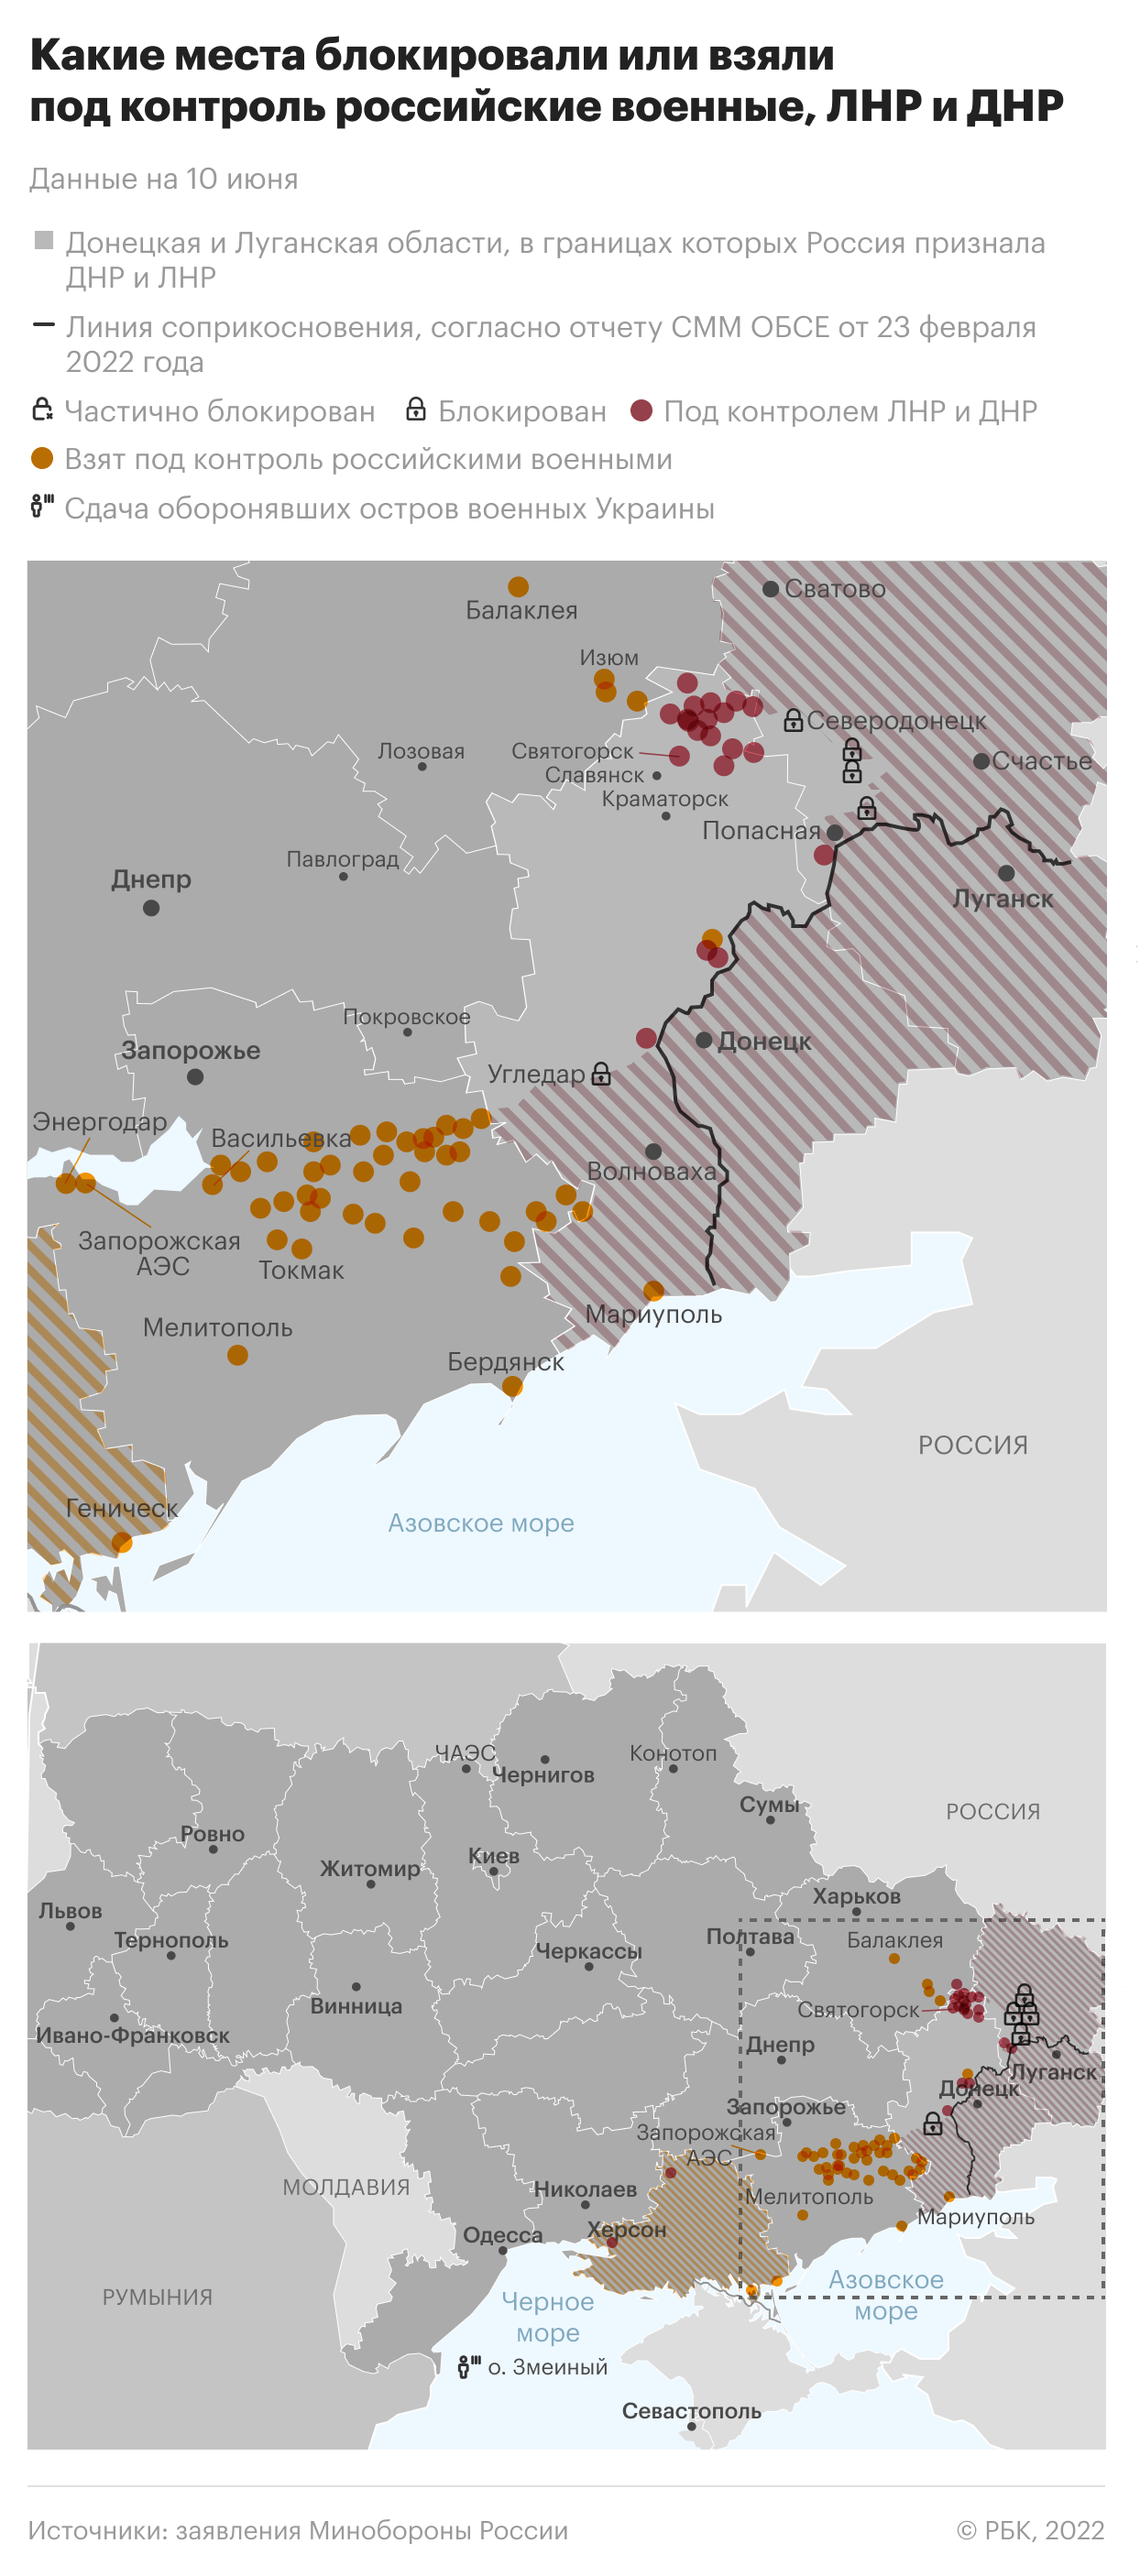 Разведка Украины признала проигрыш в «артиллерийской войне»"/>













